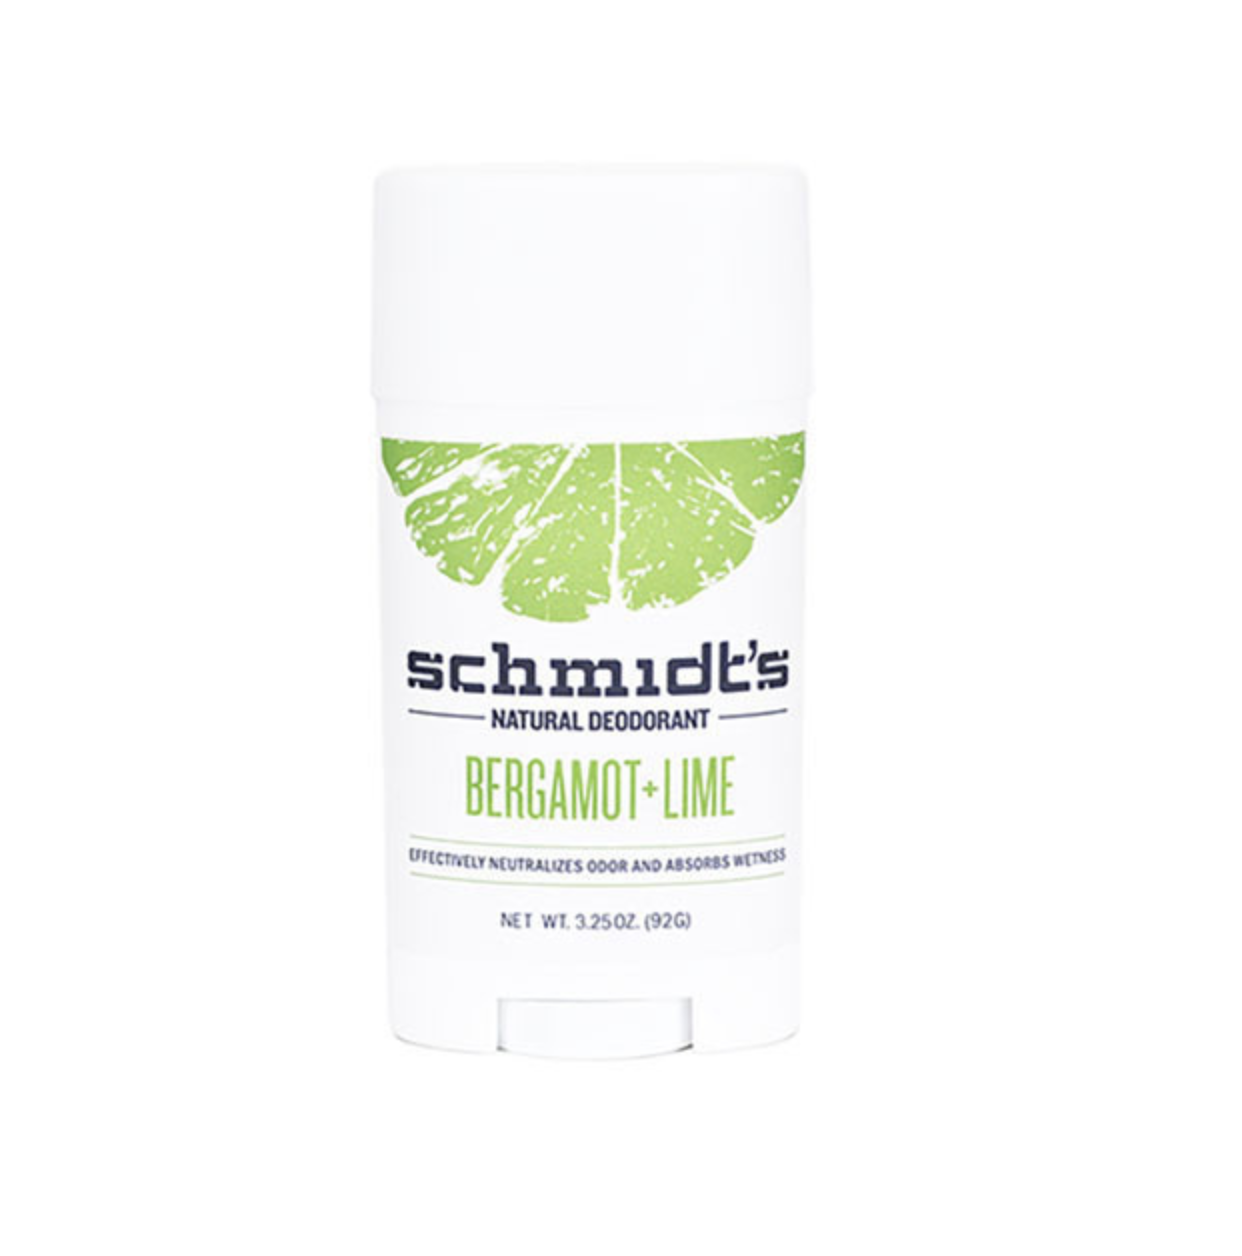 Schmidt's Natural Deodorant